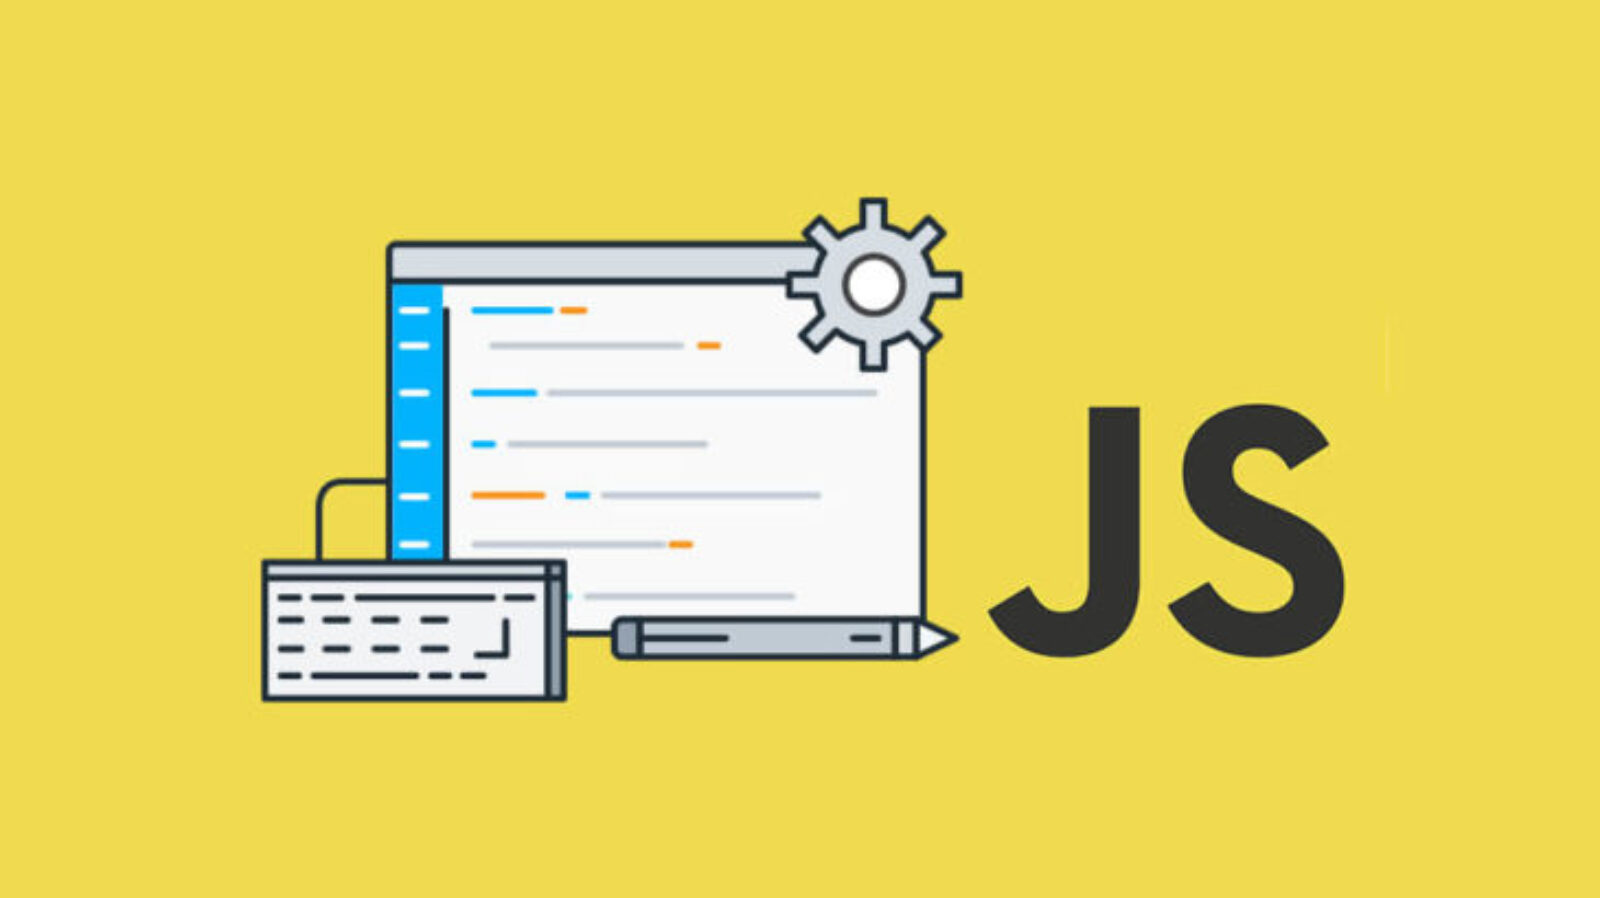 Yeni Başlayanlar için Javascript Projeleri ( Javascript Örnekleri)